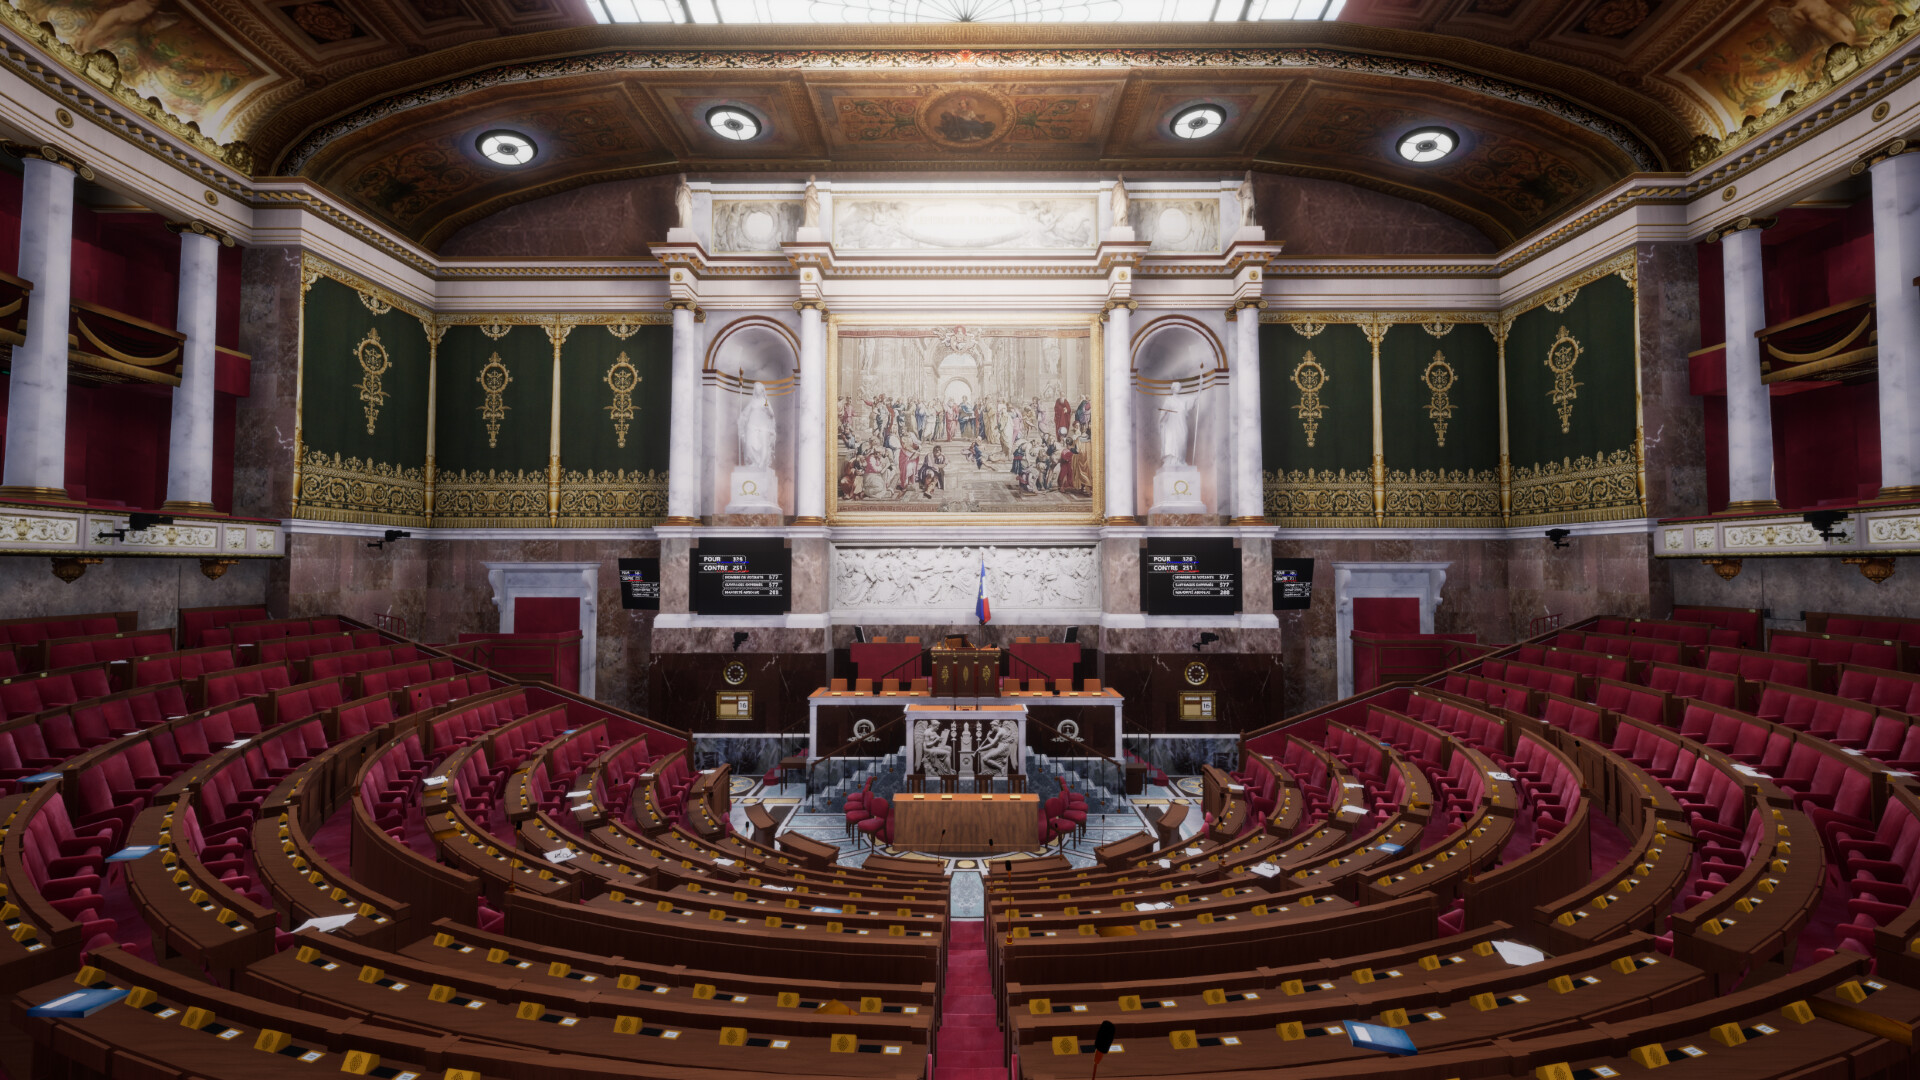 Visite virtuelle de l'Assemblée nationale